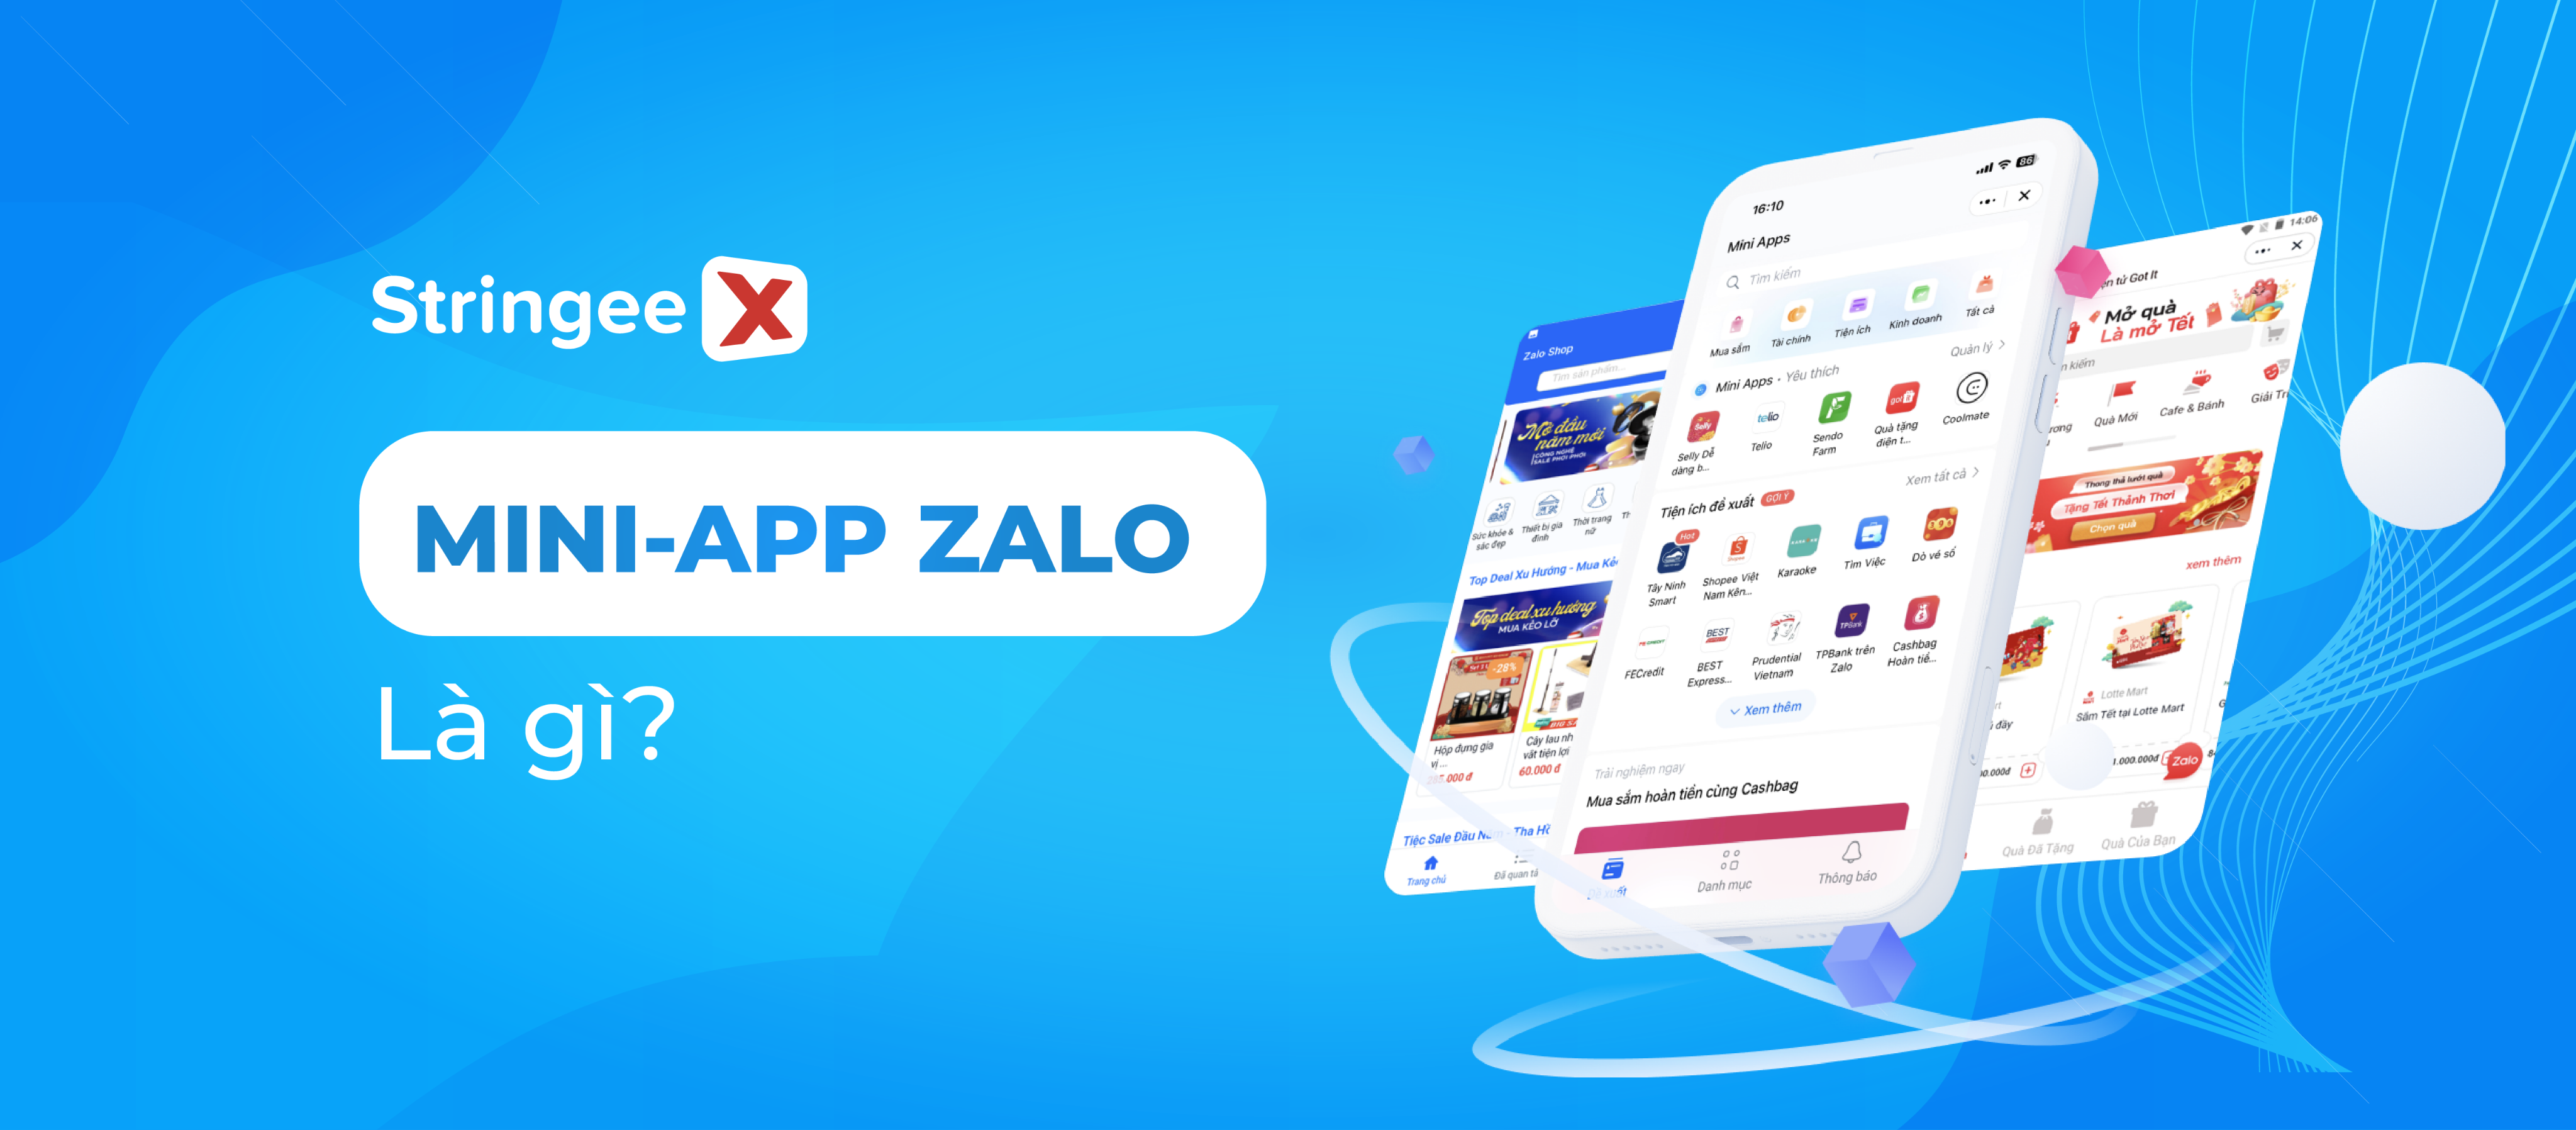 Mini App Zalo là gì? 7 lợi ích Mini App Zalo mang lại cho doanh nghiệp